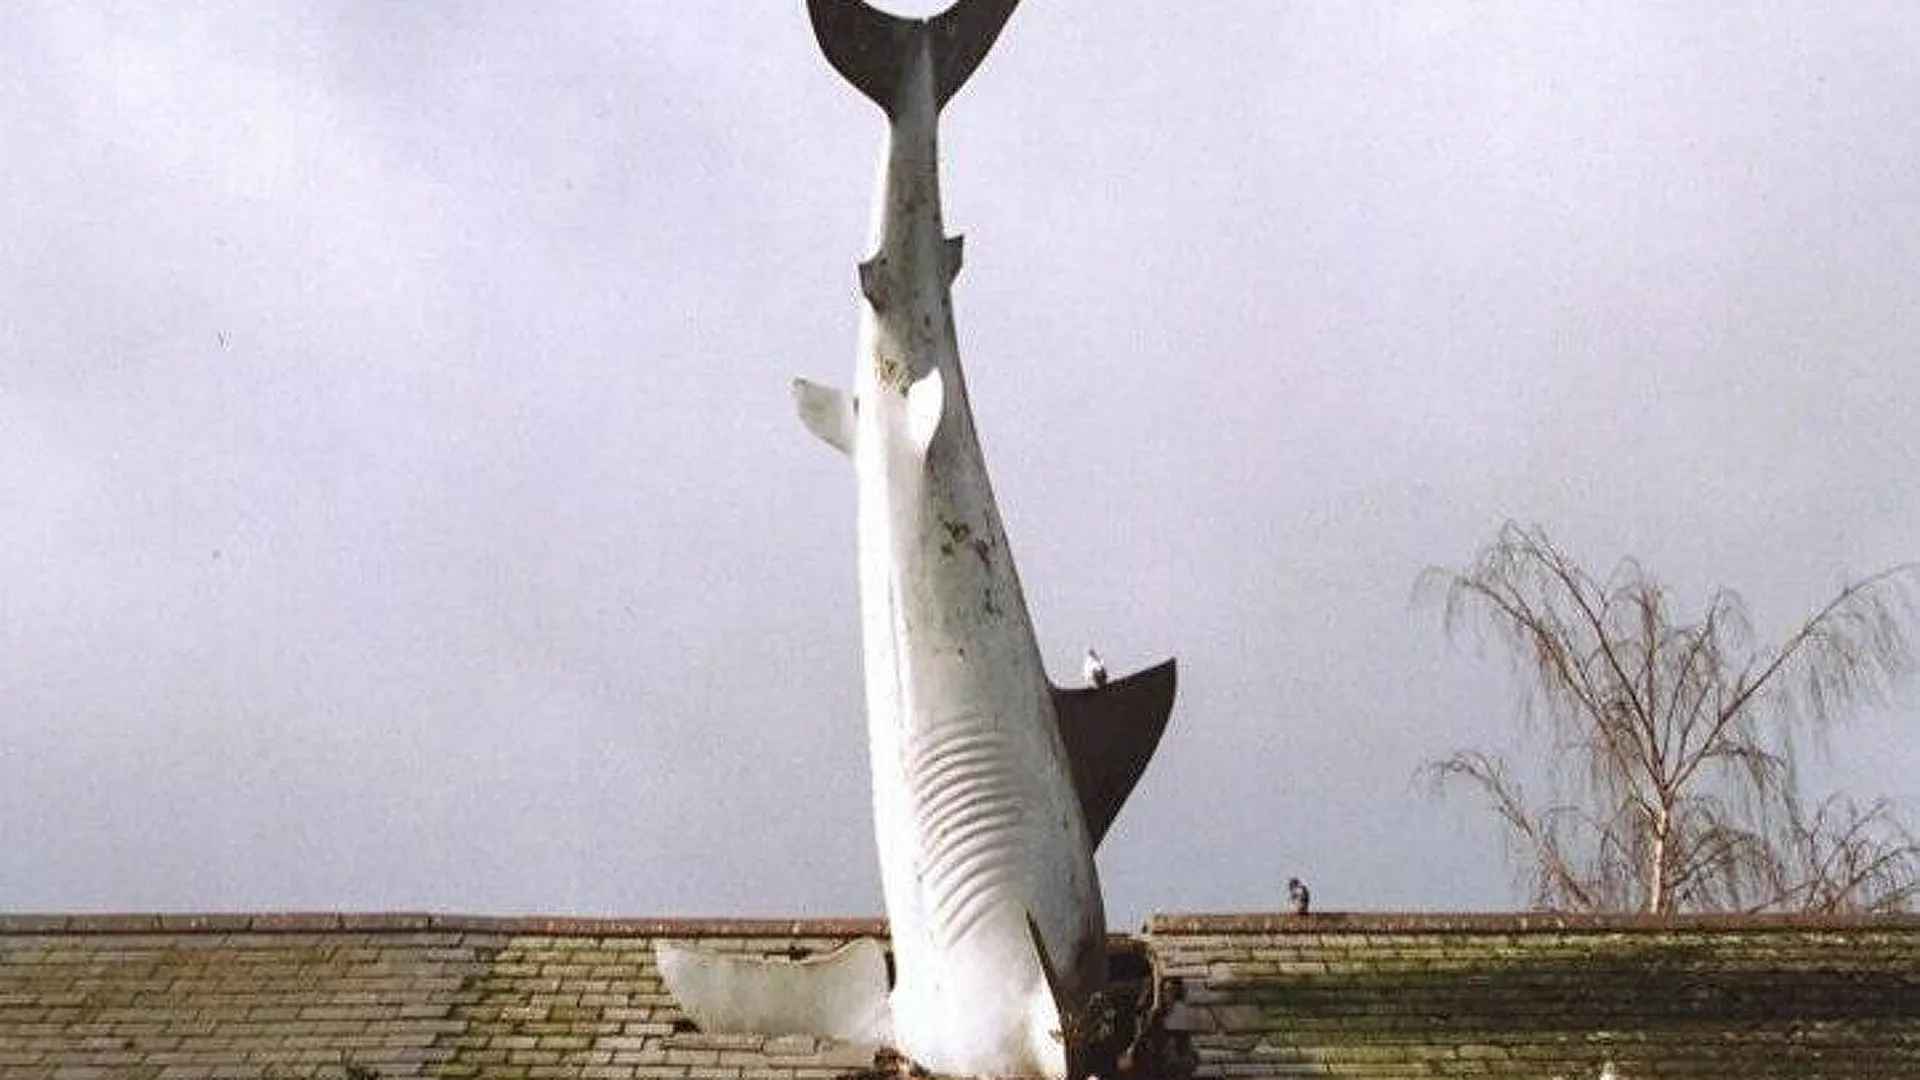  Un tiburón estrellado en contra de los bombardeos de EEUU | Fotos